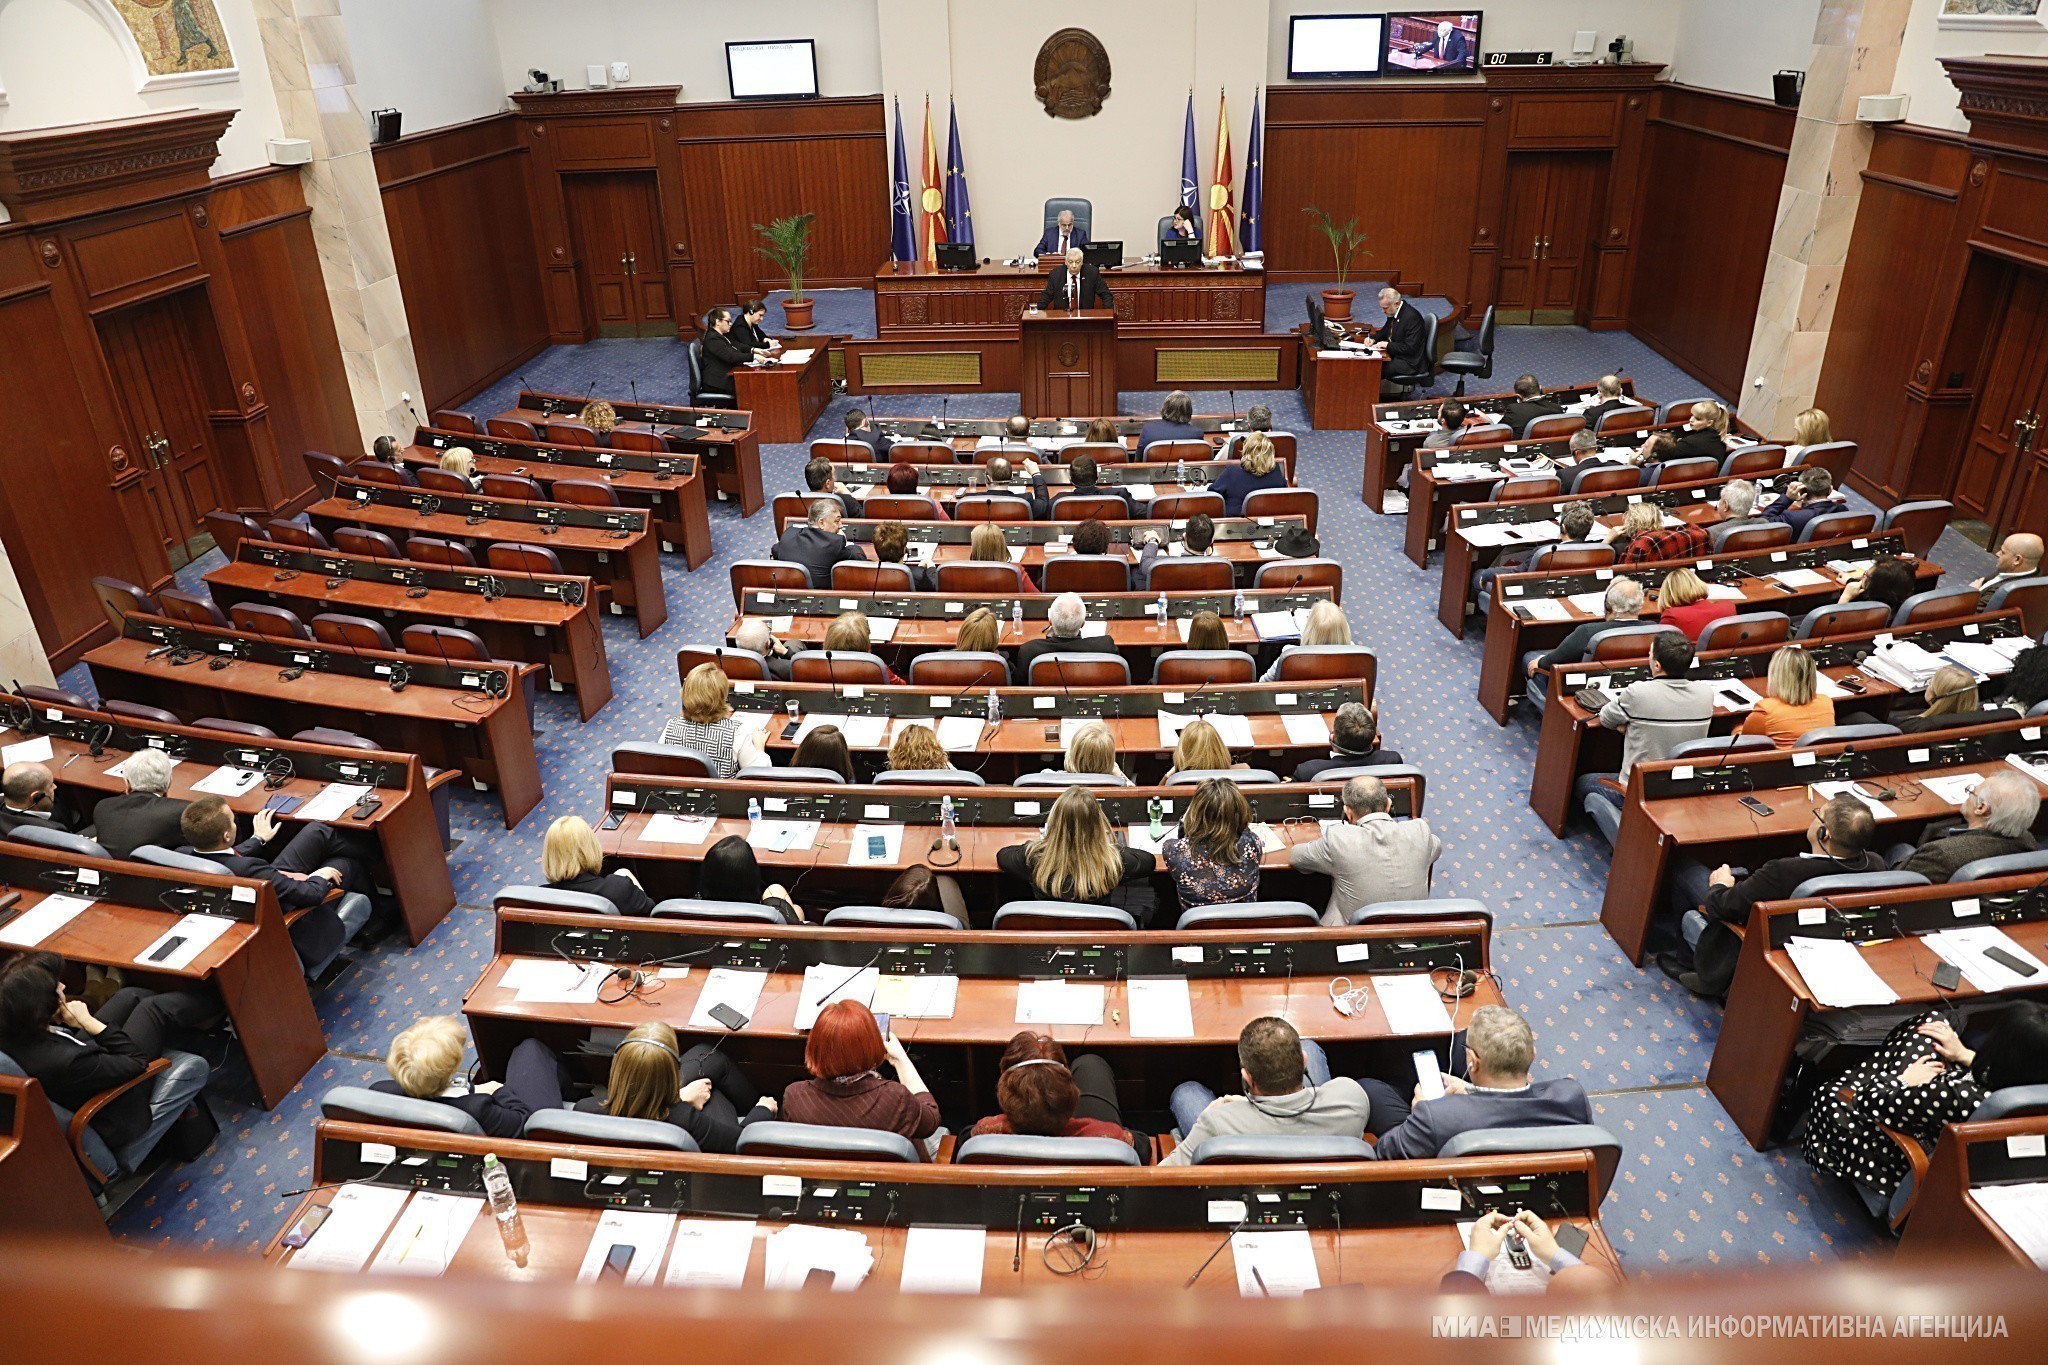 Β. Μακεδονία: Απορρίφθηκε η τροπολογία για παράταση της ισχύος των παλαιών διαβατηρίων